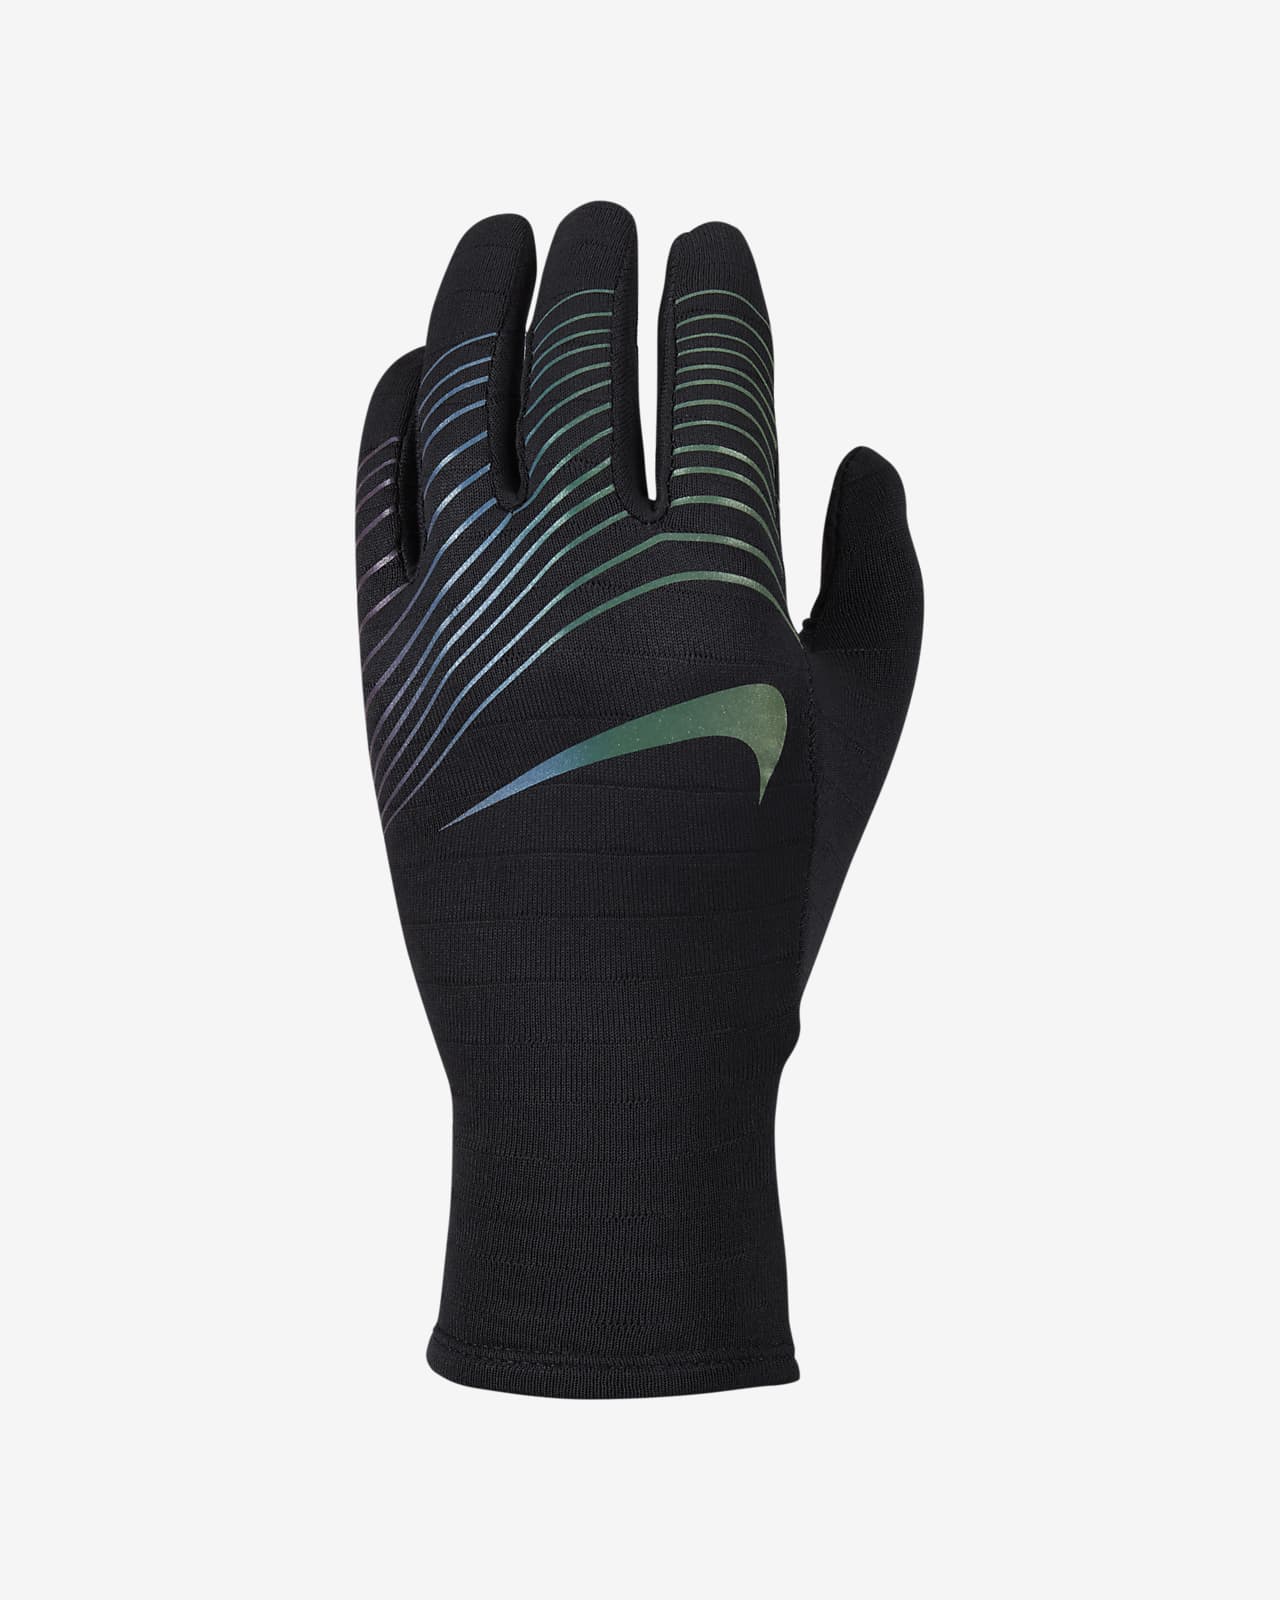 Nike Sphere Women's Running Gloves